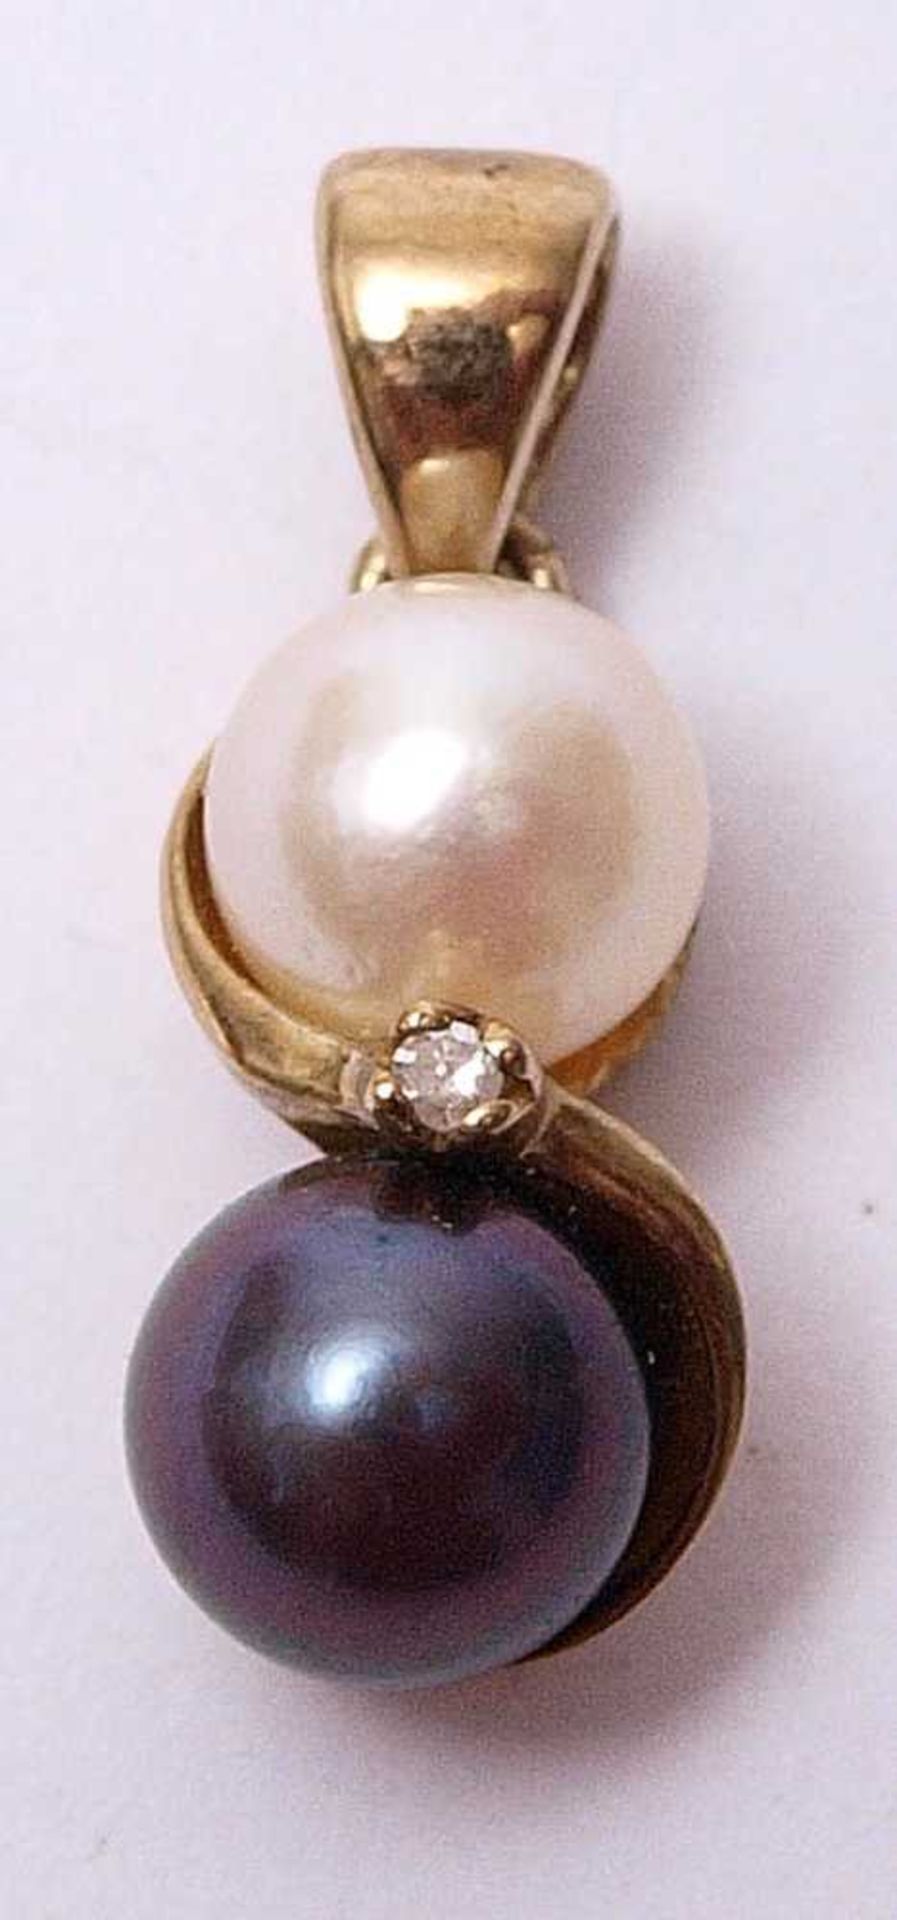 AnhängerGG 8k, besetzt mit schwarzer und weißer Perle sowie einem Diamantsplitter.